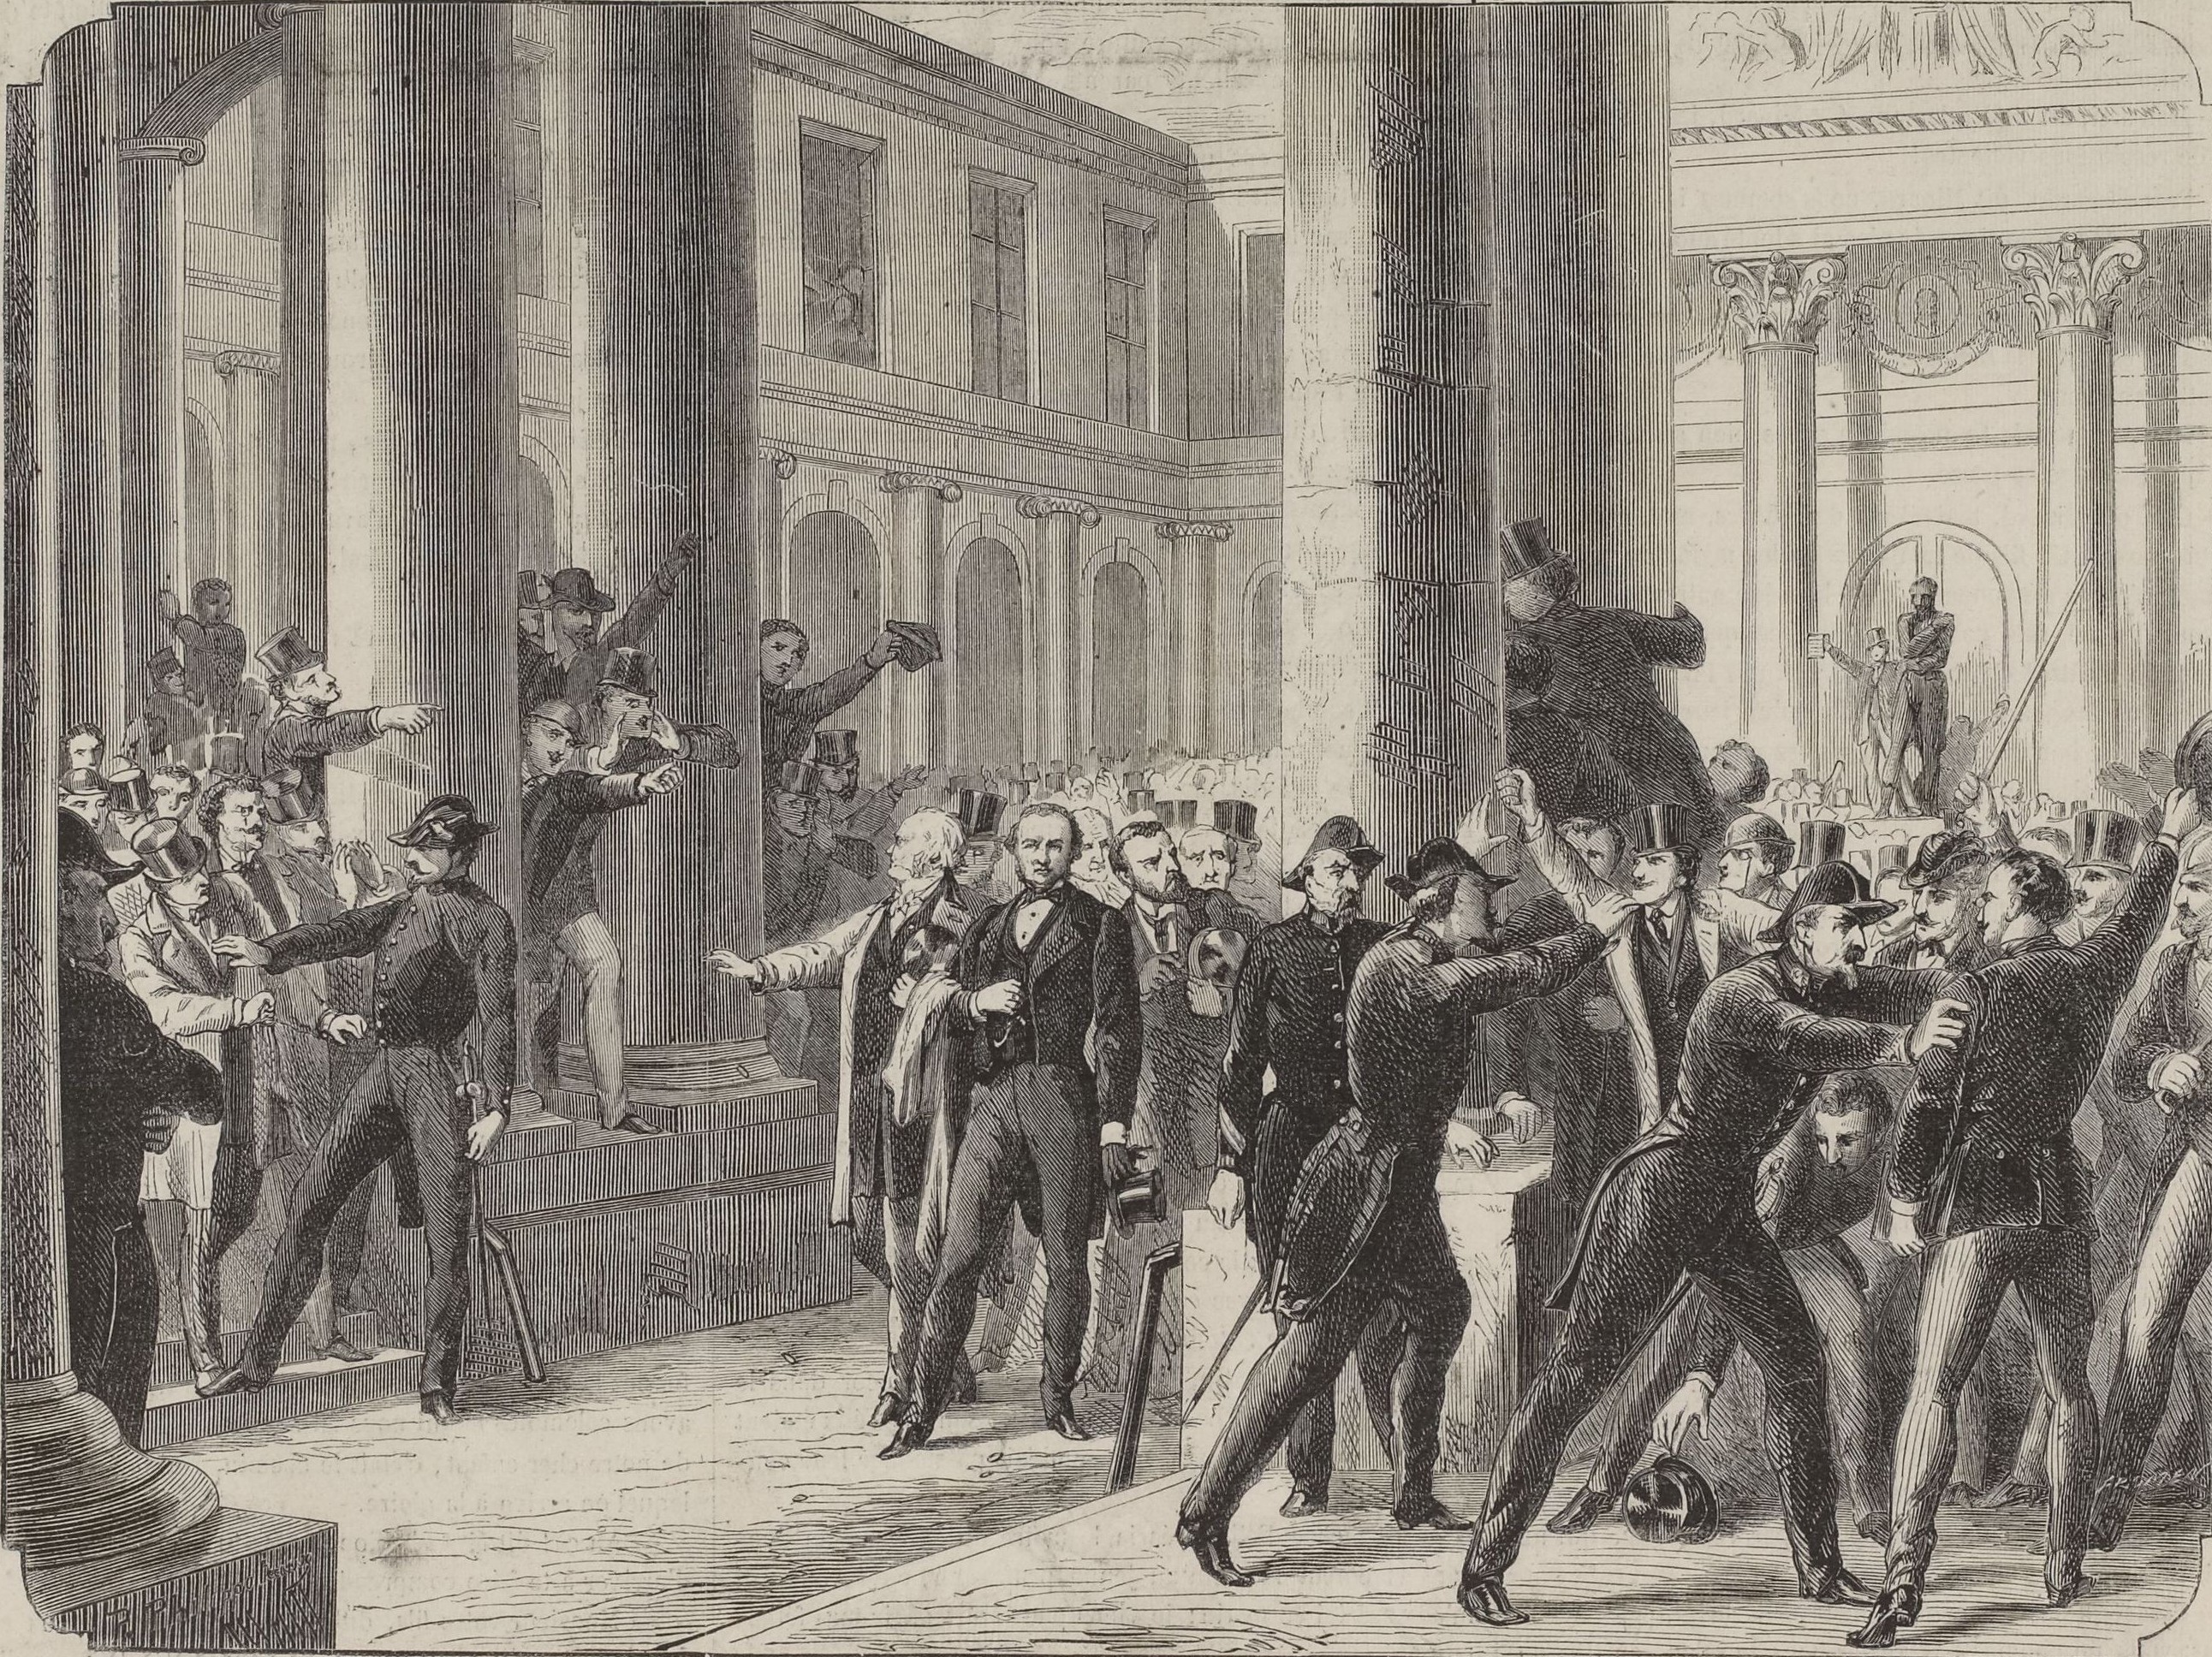 Manifestation des étudiants en médecine au cours de M. Tardieu. Gravure de Philippoteaux, 1870  (source : © Musée Carnavalet – Histoire de Paris)